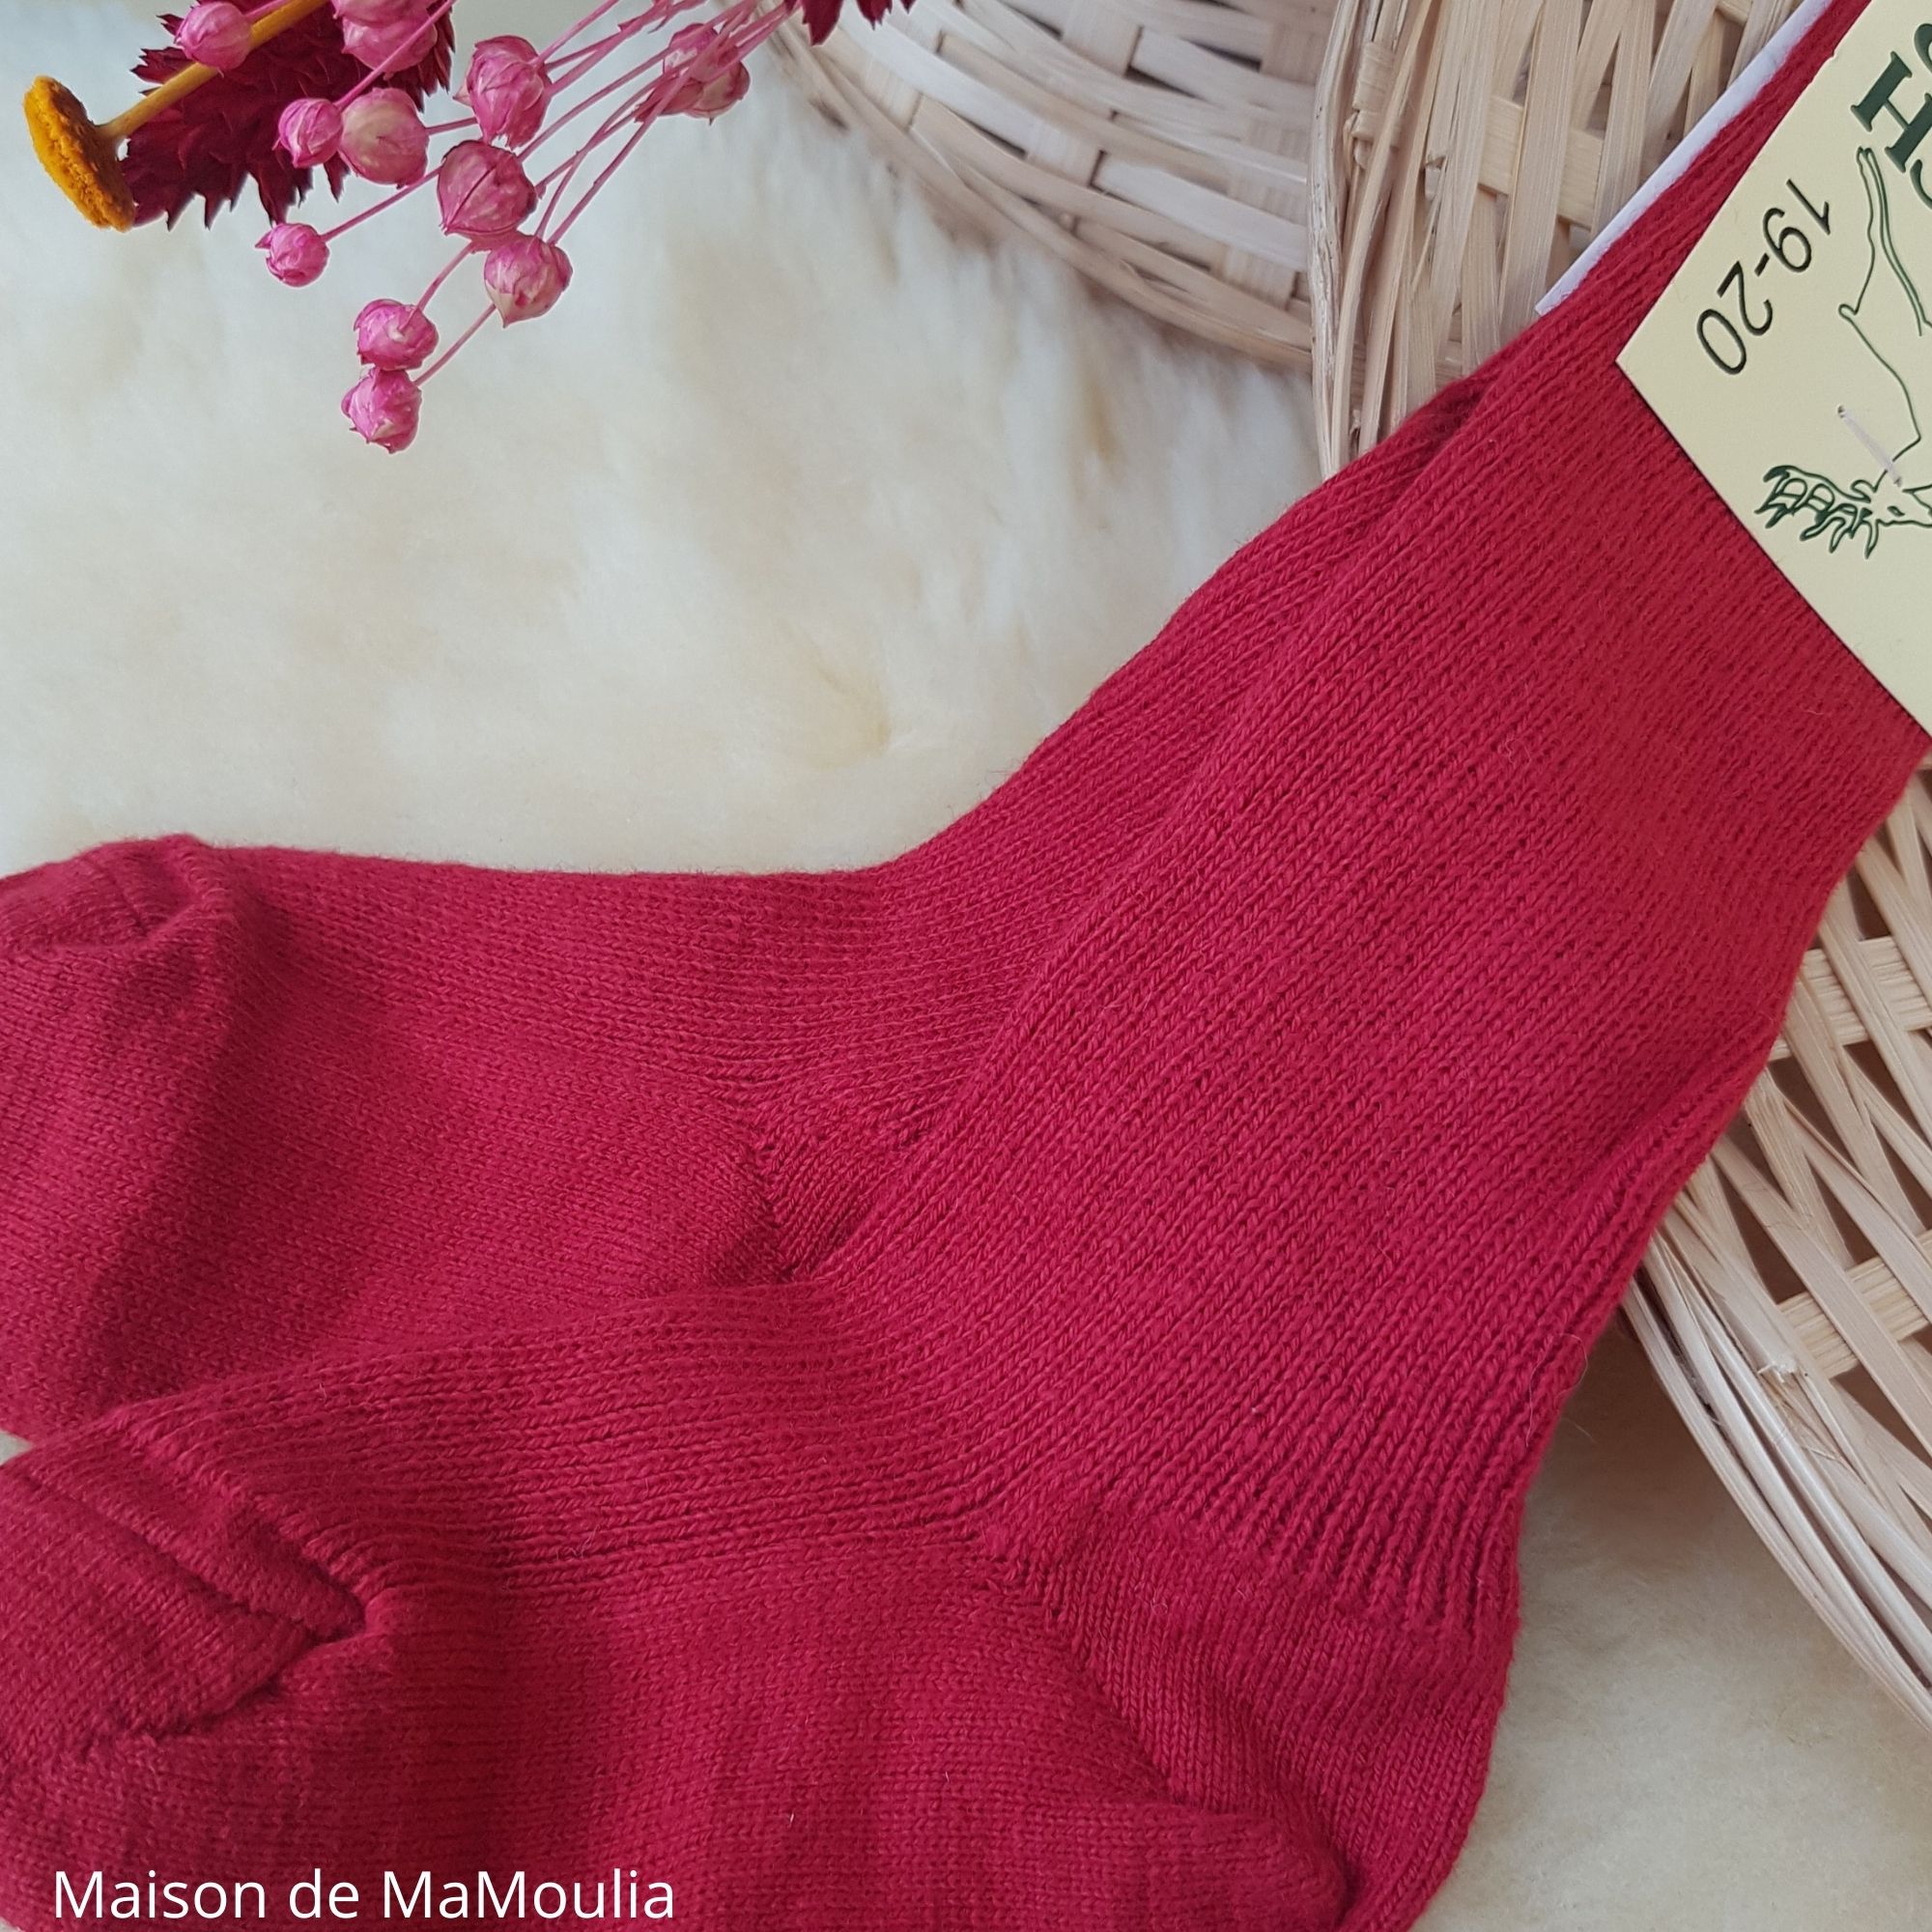 820-chaussettes-fines-chaudes-laine-coton-bio-ecologique-hirsch-natur-bebe-enfant-maison-de-mamoulia-rouge